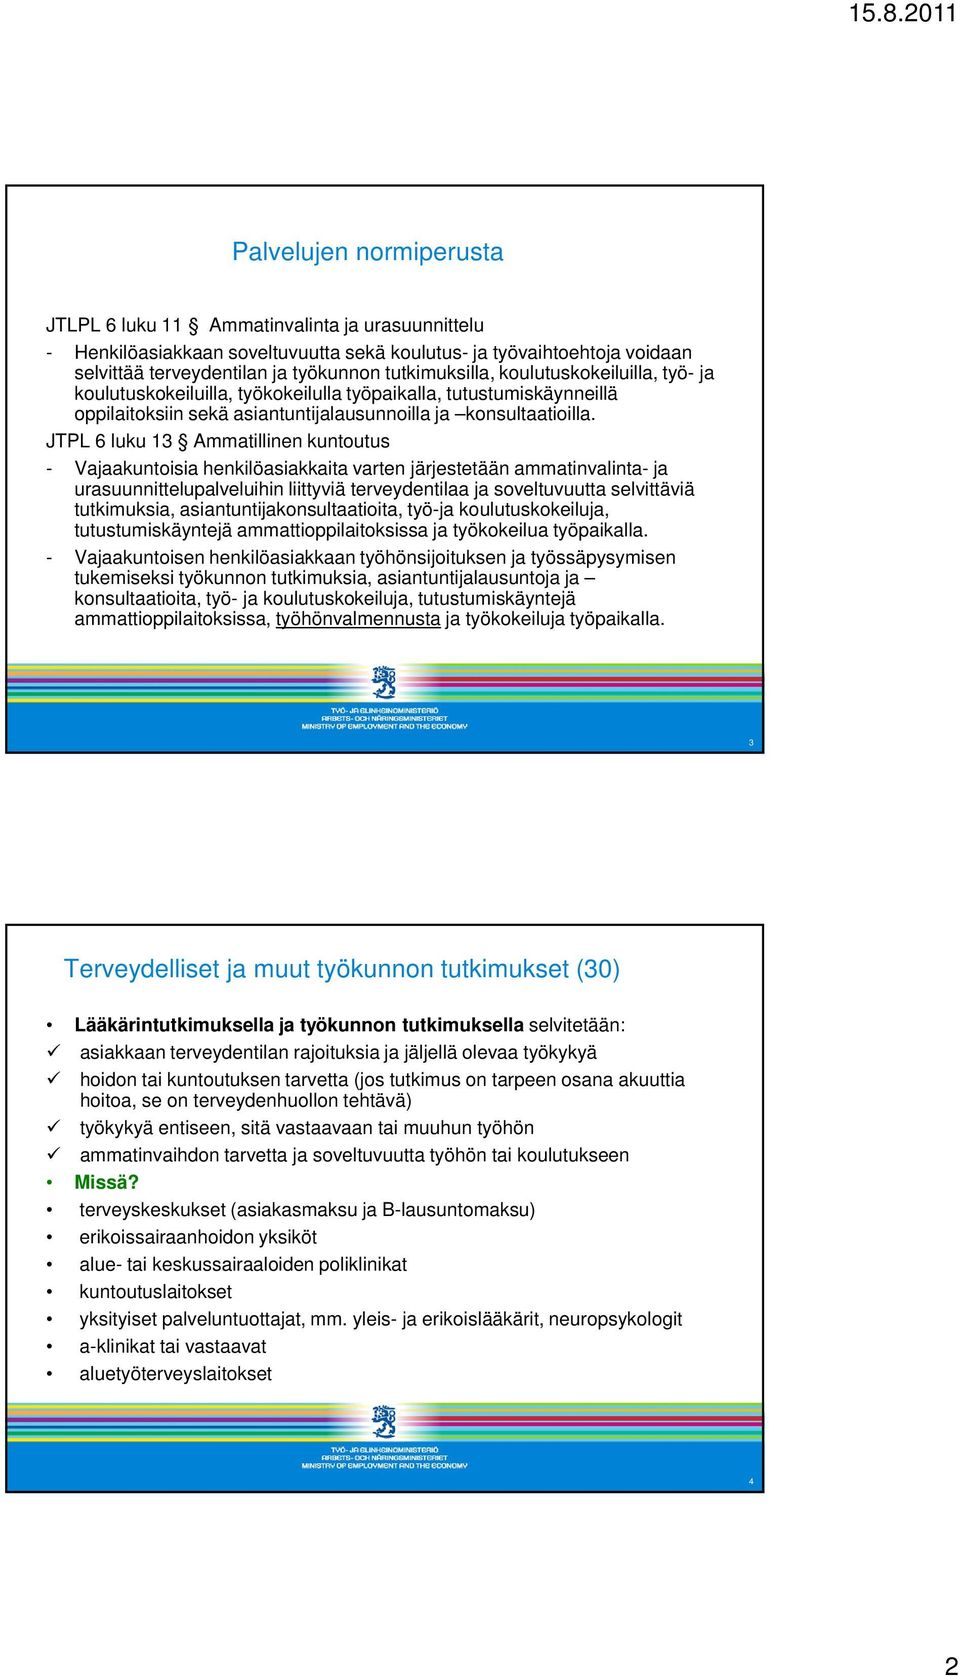 JTPL 6 luku 13 Ammatillinen kuntoutus - Vajaakuntoisia henkilöasiakkaita varten järjestetään ammatinvalinta- ja urasuunnittelupalveluihin liittyviä terveydentilaa ja soveltuvuutta selvittäviä